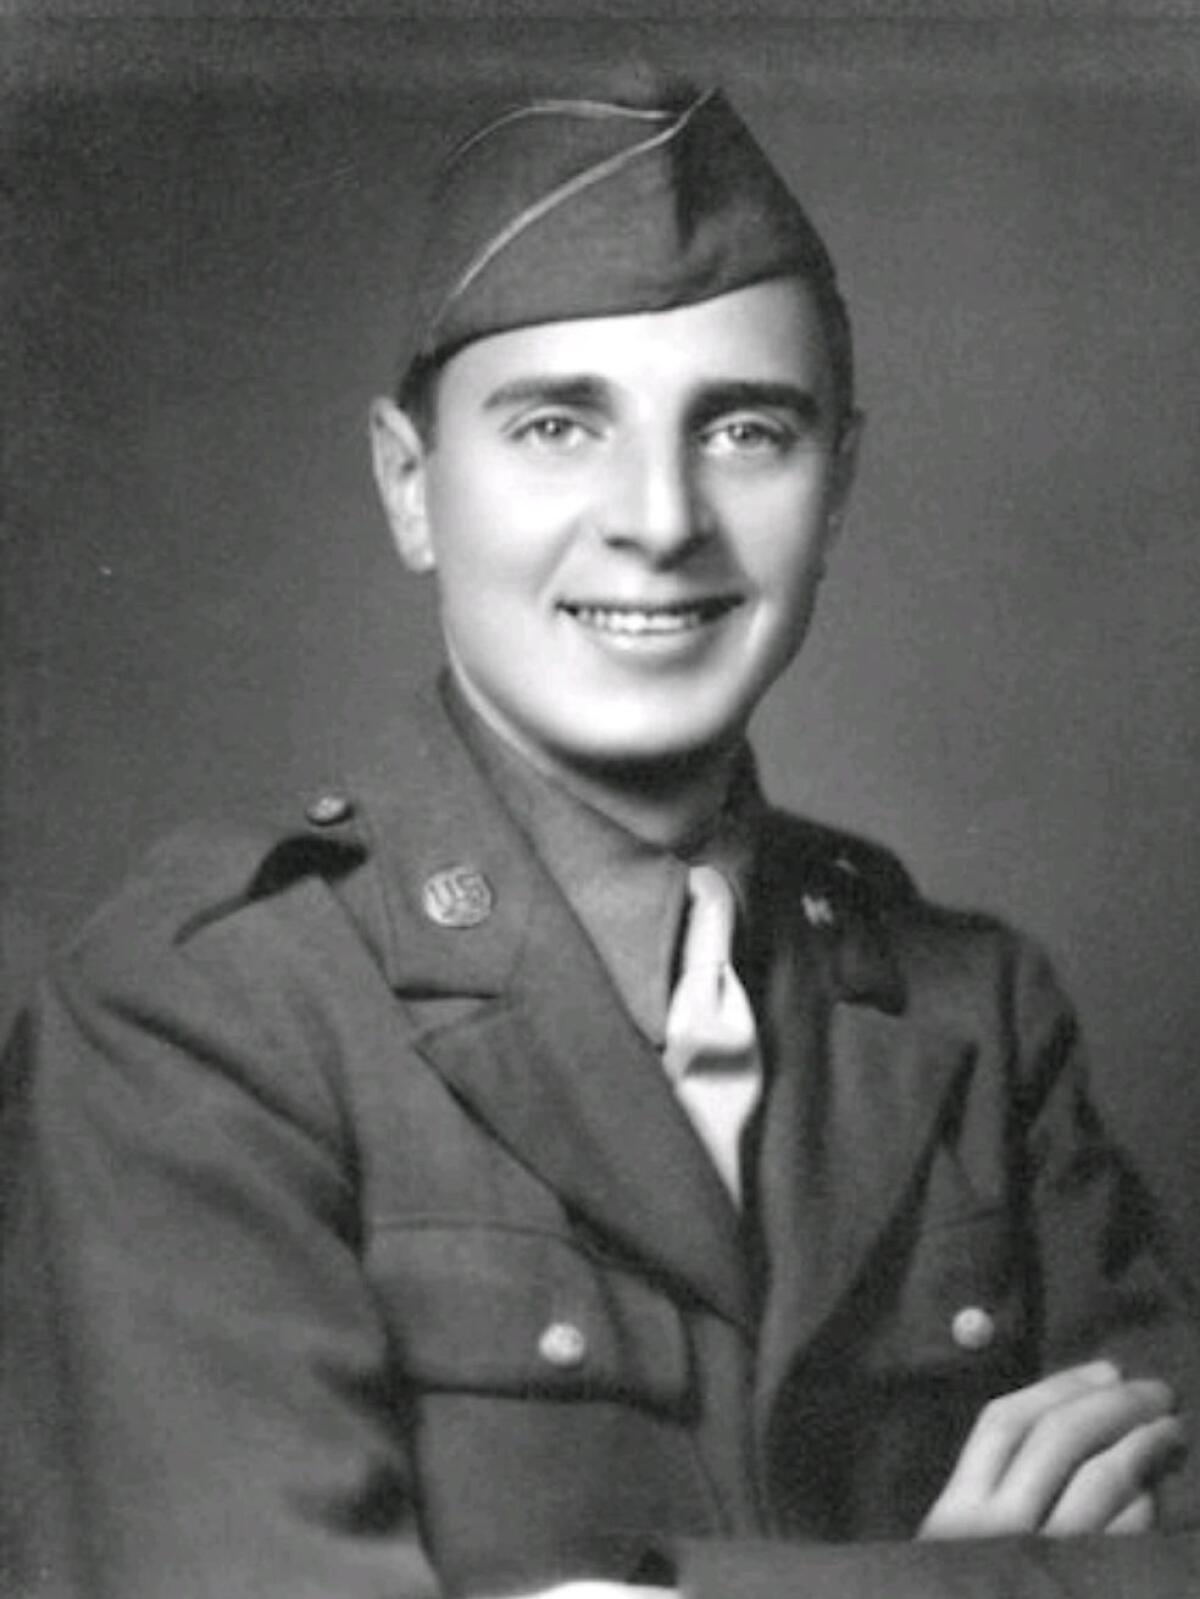 Sidney Walton as a U.S. Army infantryman during World War II.